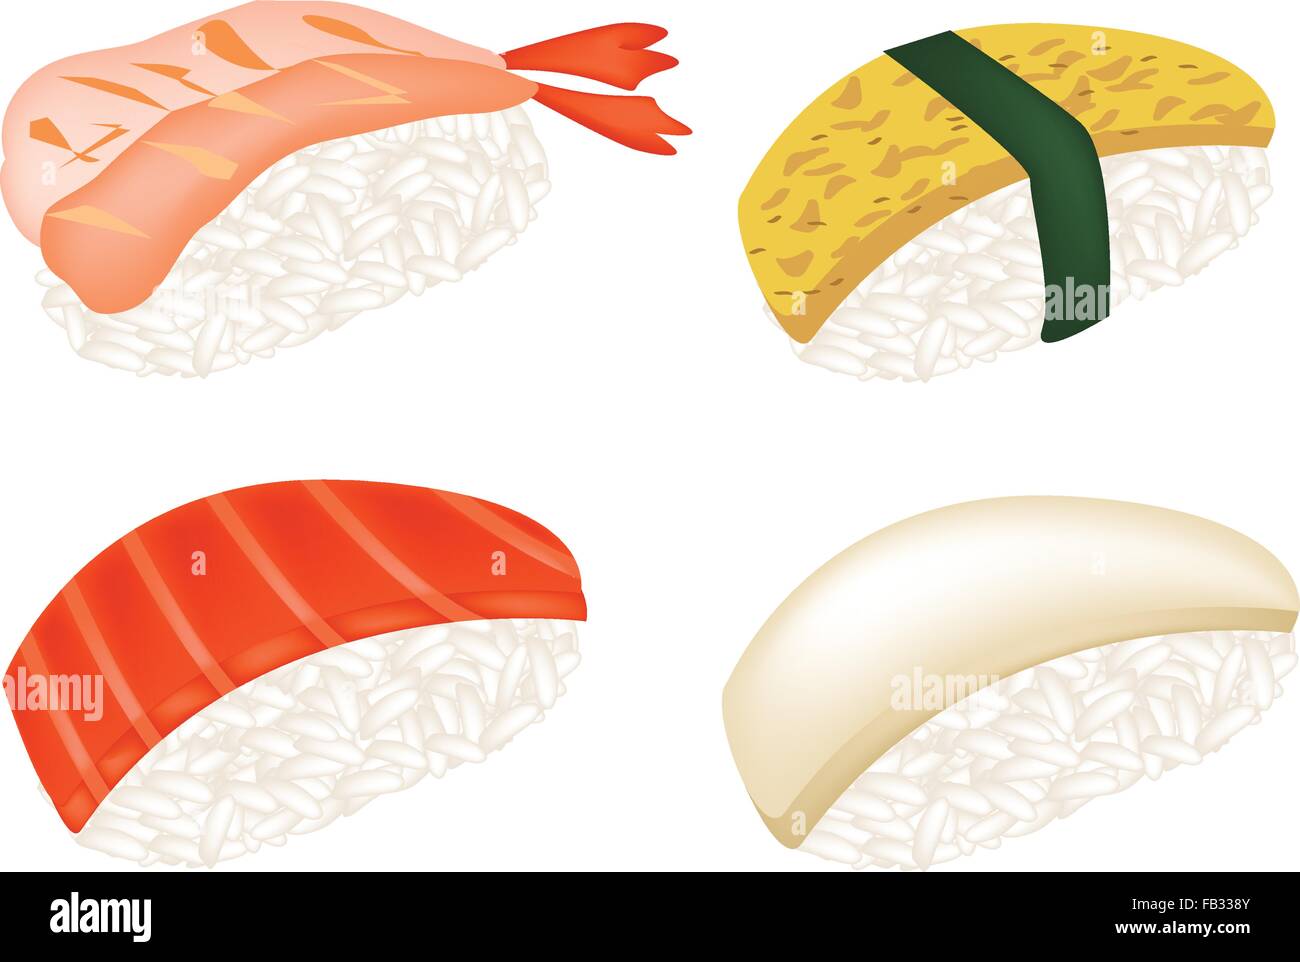 Japanese Cuisine, Illustration of Fresh Salmon Sushi, Tako Sushi, Ebi Sushi and Tamagoyaki Nigiri Isolated on White Background. Stock Vector